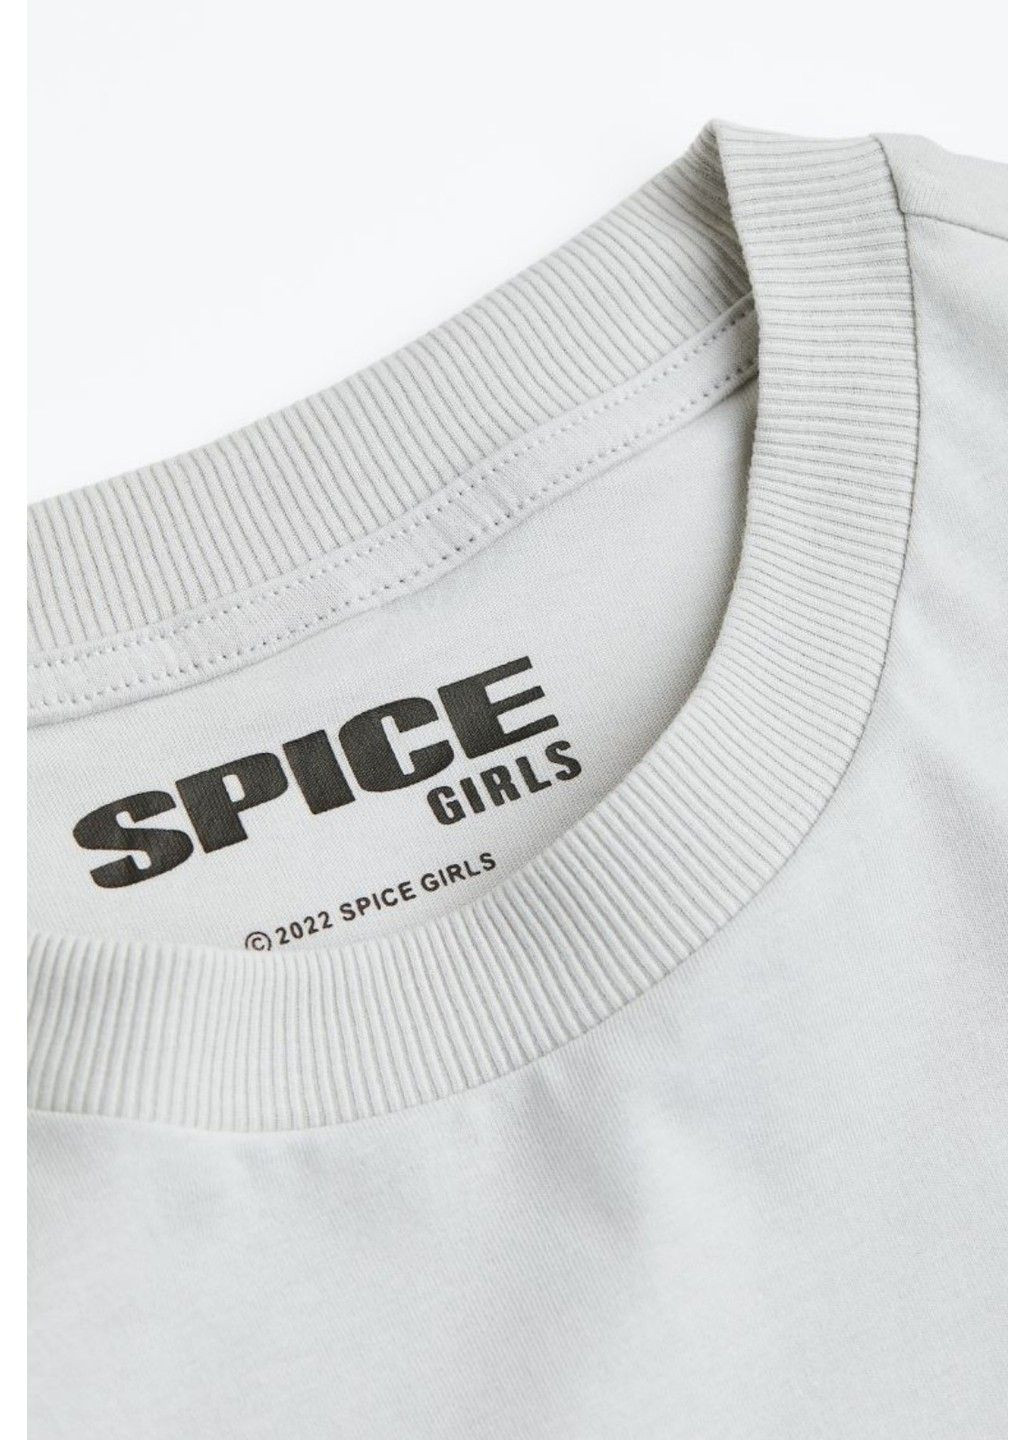 Светло-серая летняя женская футболка оверсайз с принтом н&м (56641) хxs светло-серая H&M